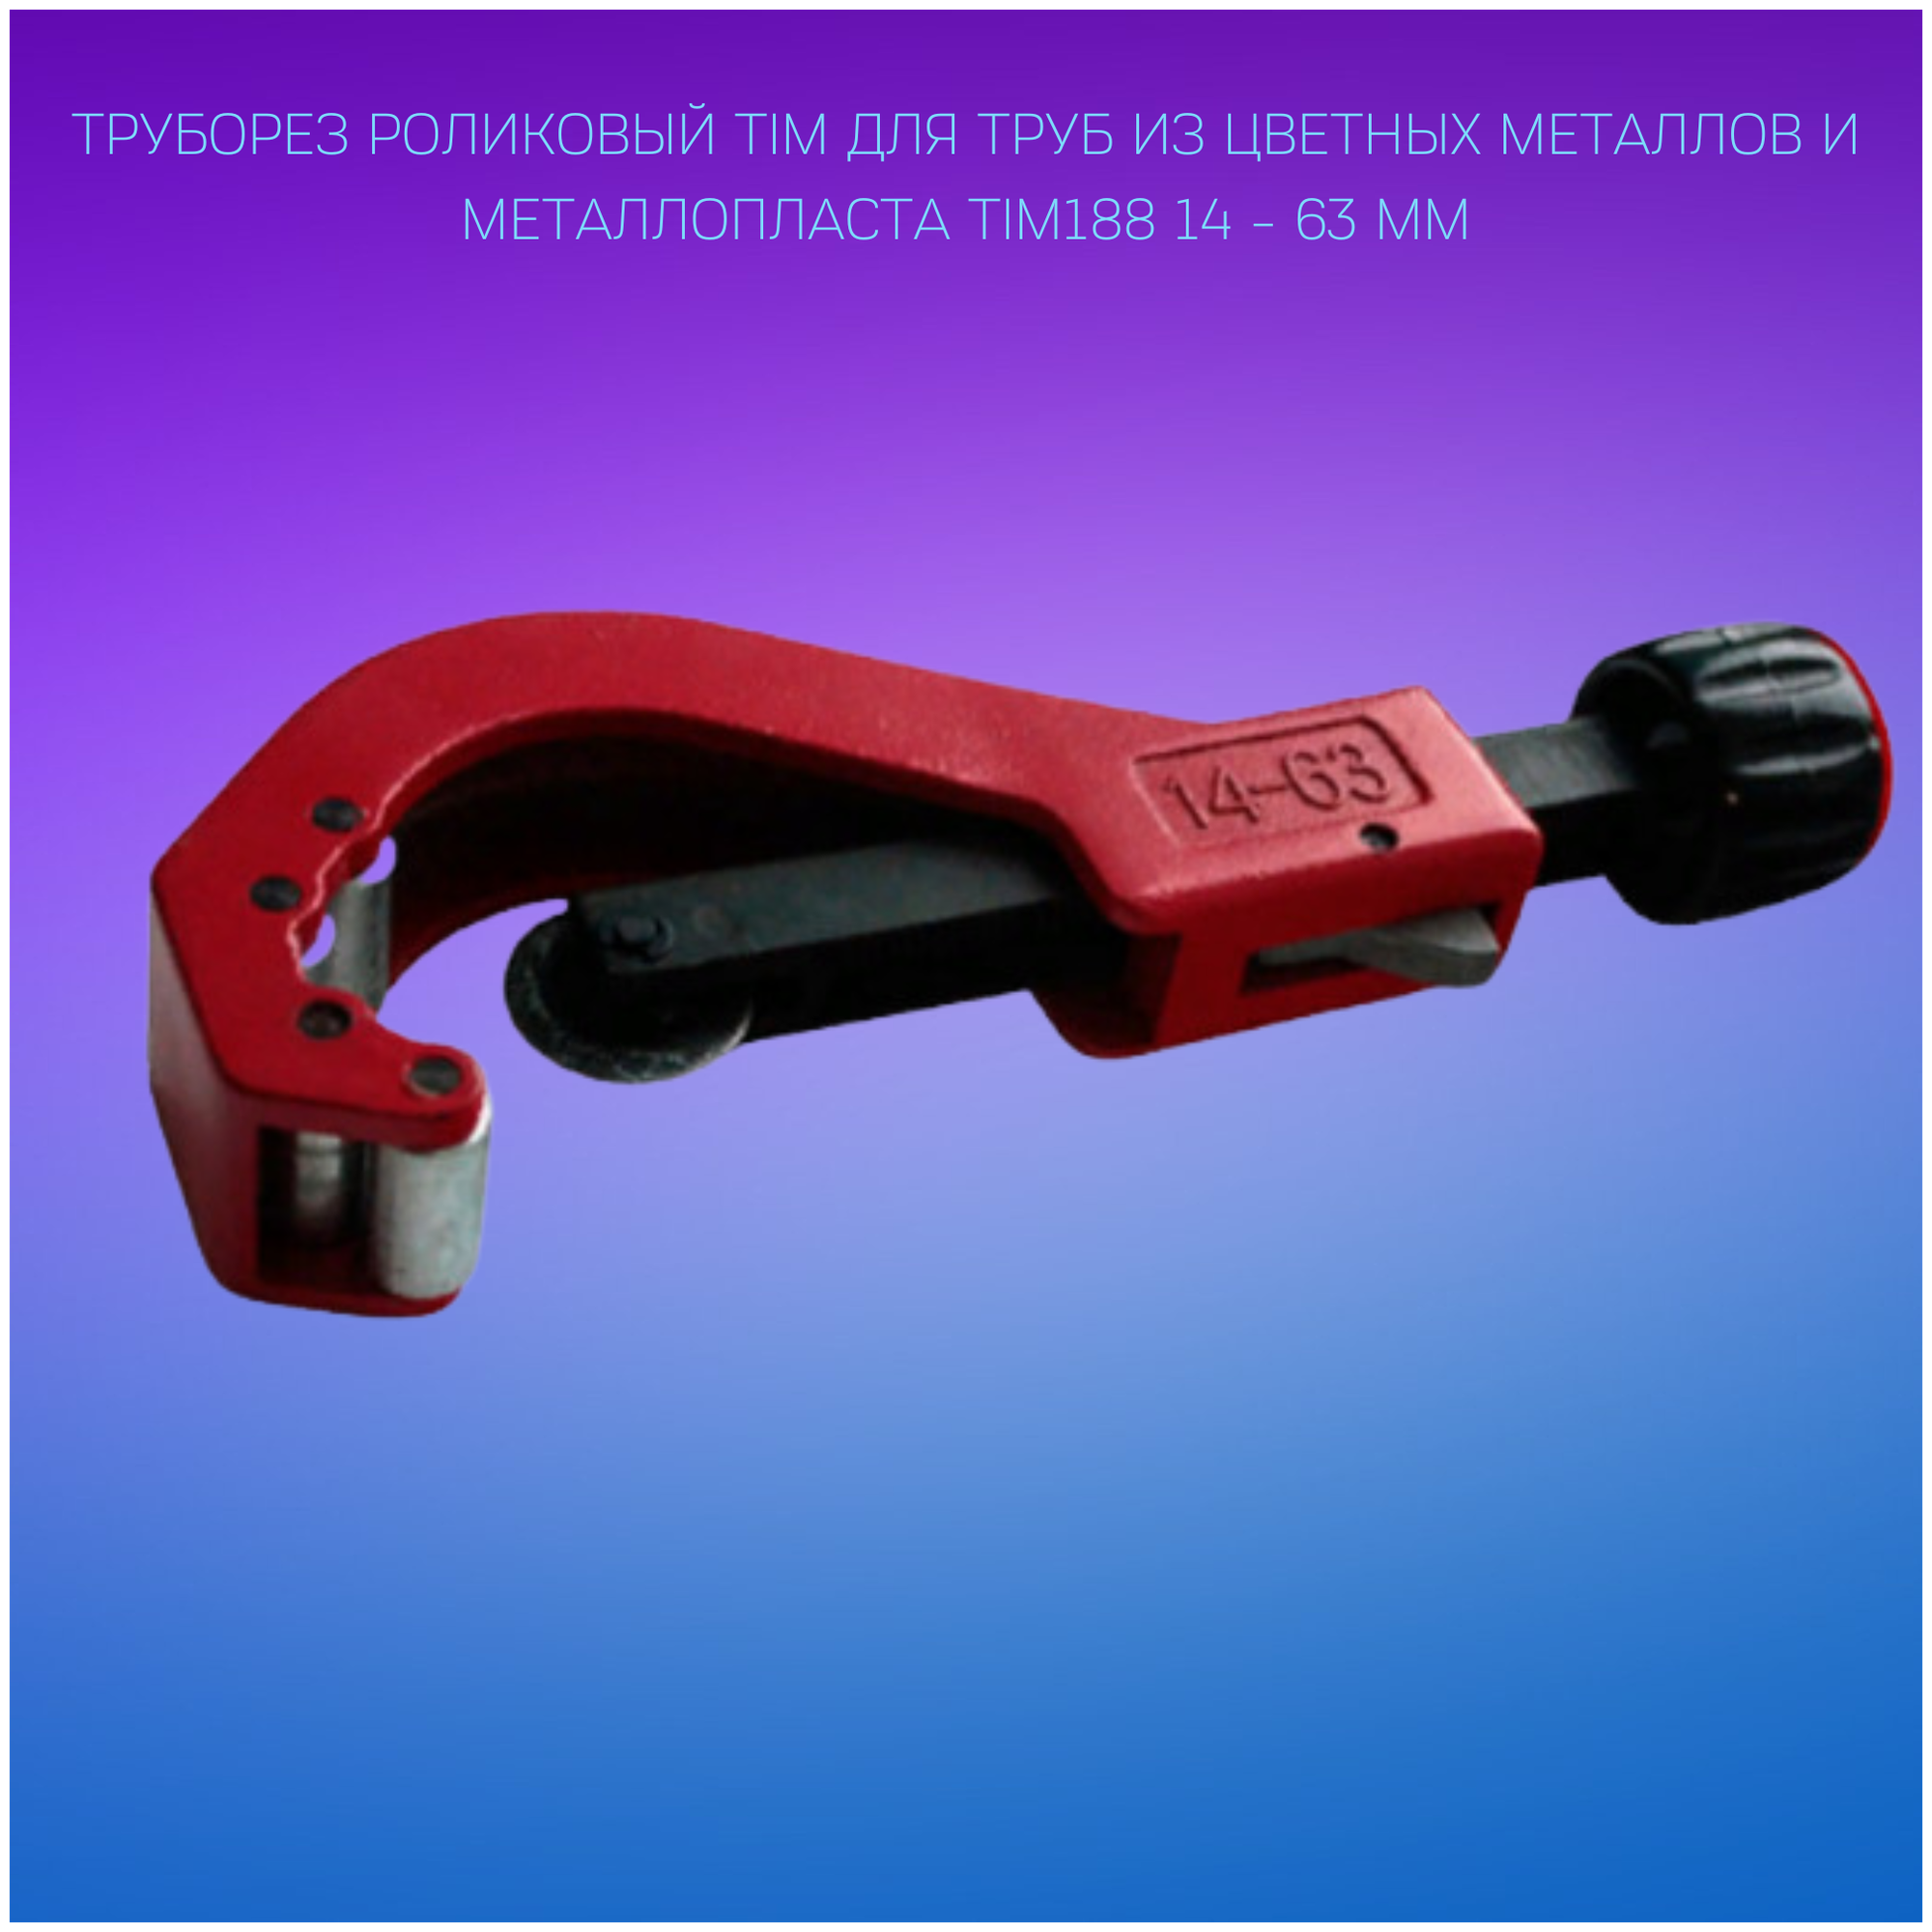 Труборез роликовый TIM для труб из цветных металлов и металлопласта TIM188 14 - 63